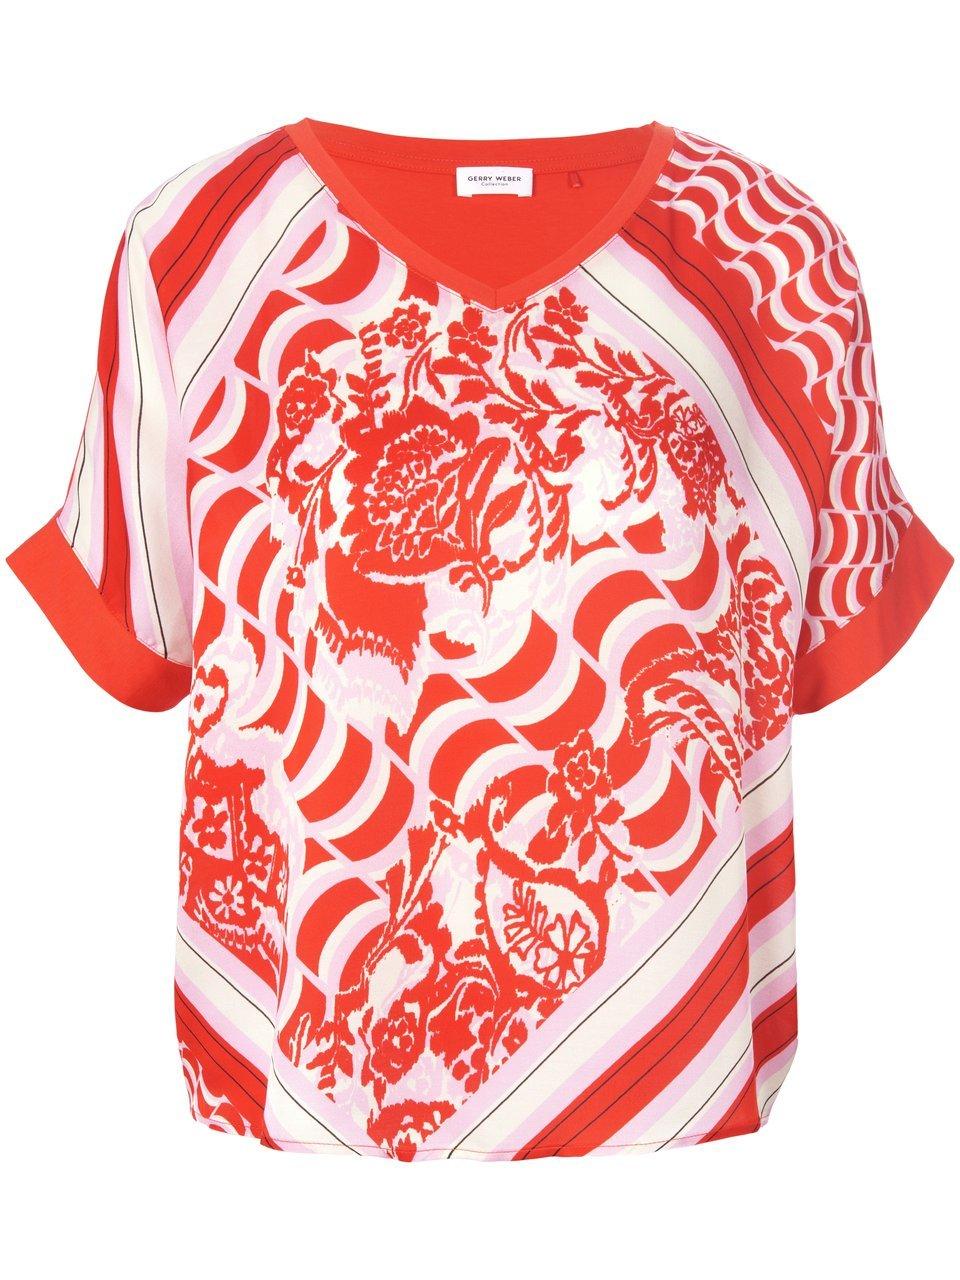 GERRY WEBER Dames Shirt met halflange mouwen Lila/Pink/Rot/Orange Druck-48